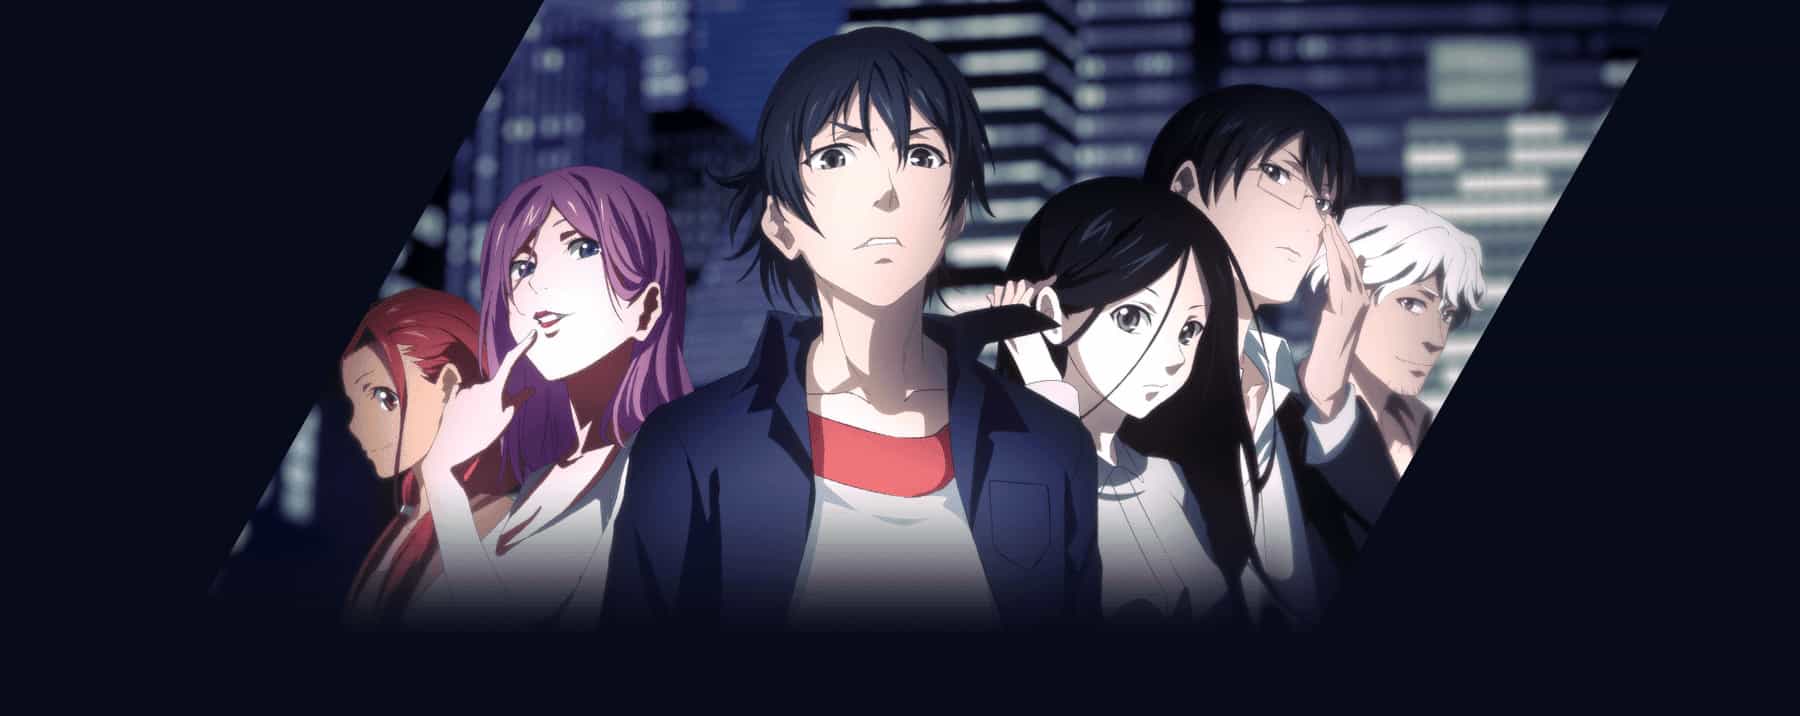 Hitori no Shita: The Outcast Season 4 - Trakt